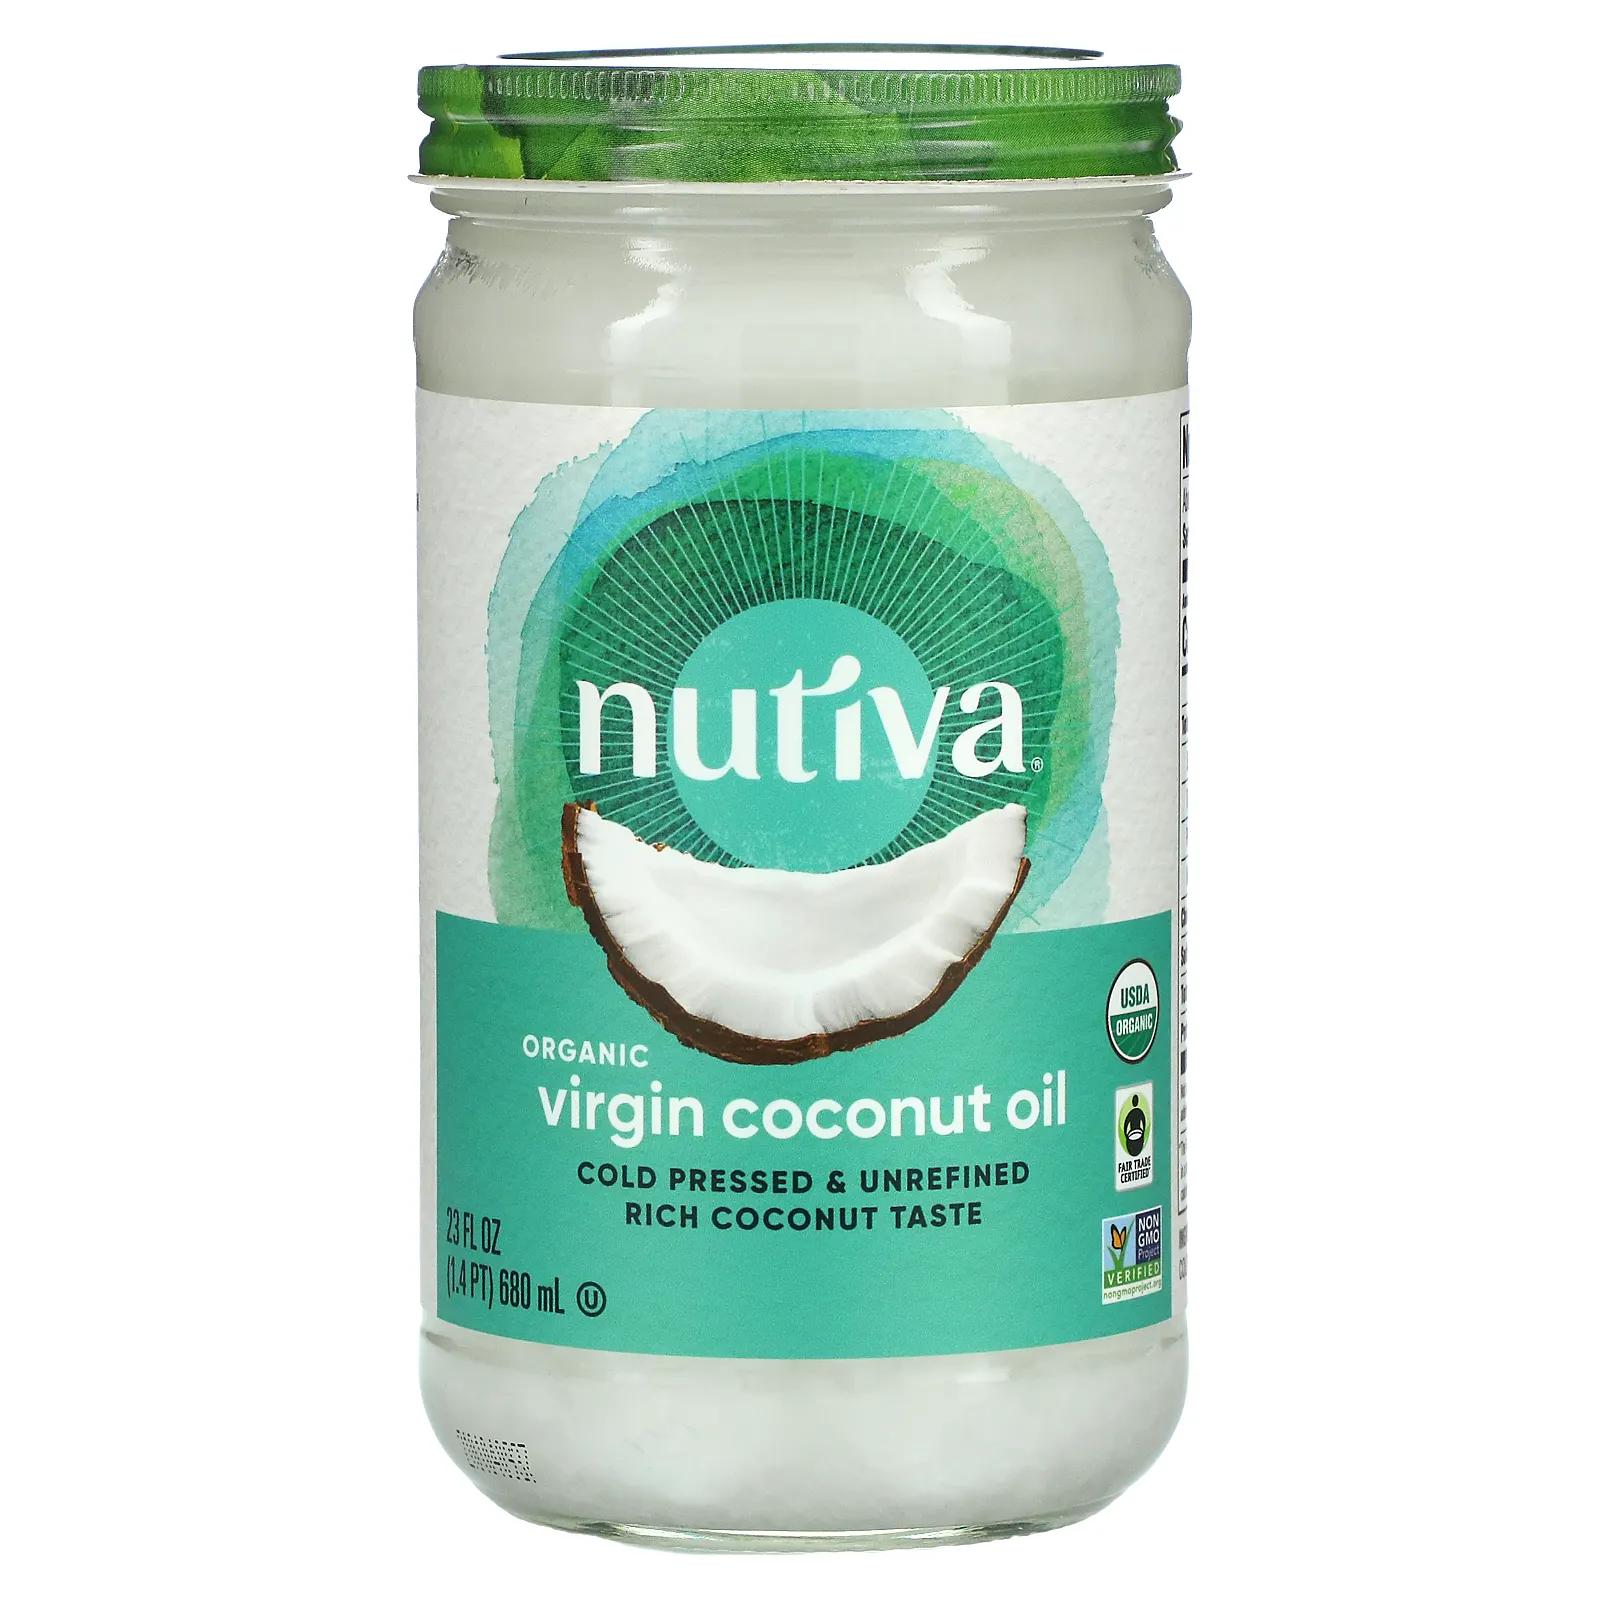 Nutiva Органическое кокосовое масло Virgin 23 жидкие унции (680 мл) органическое кокосовое масло nutiva virgin